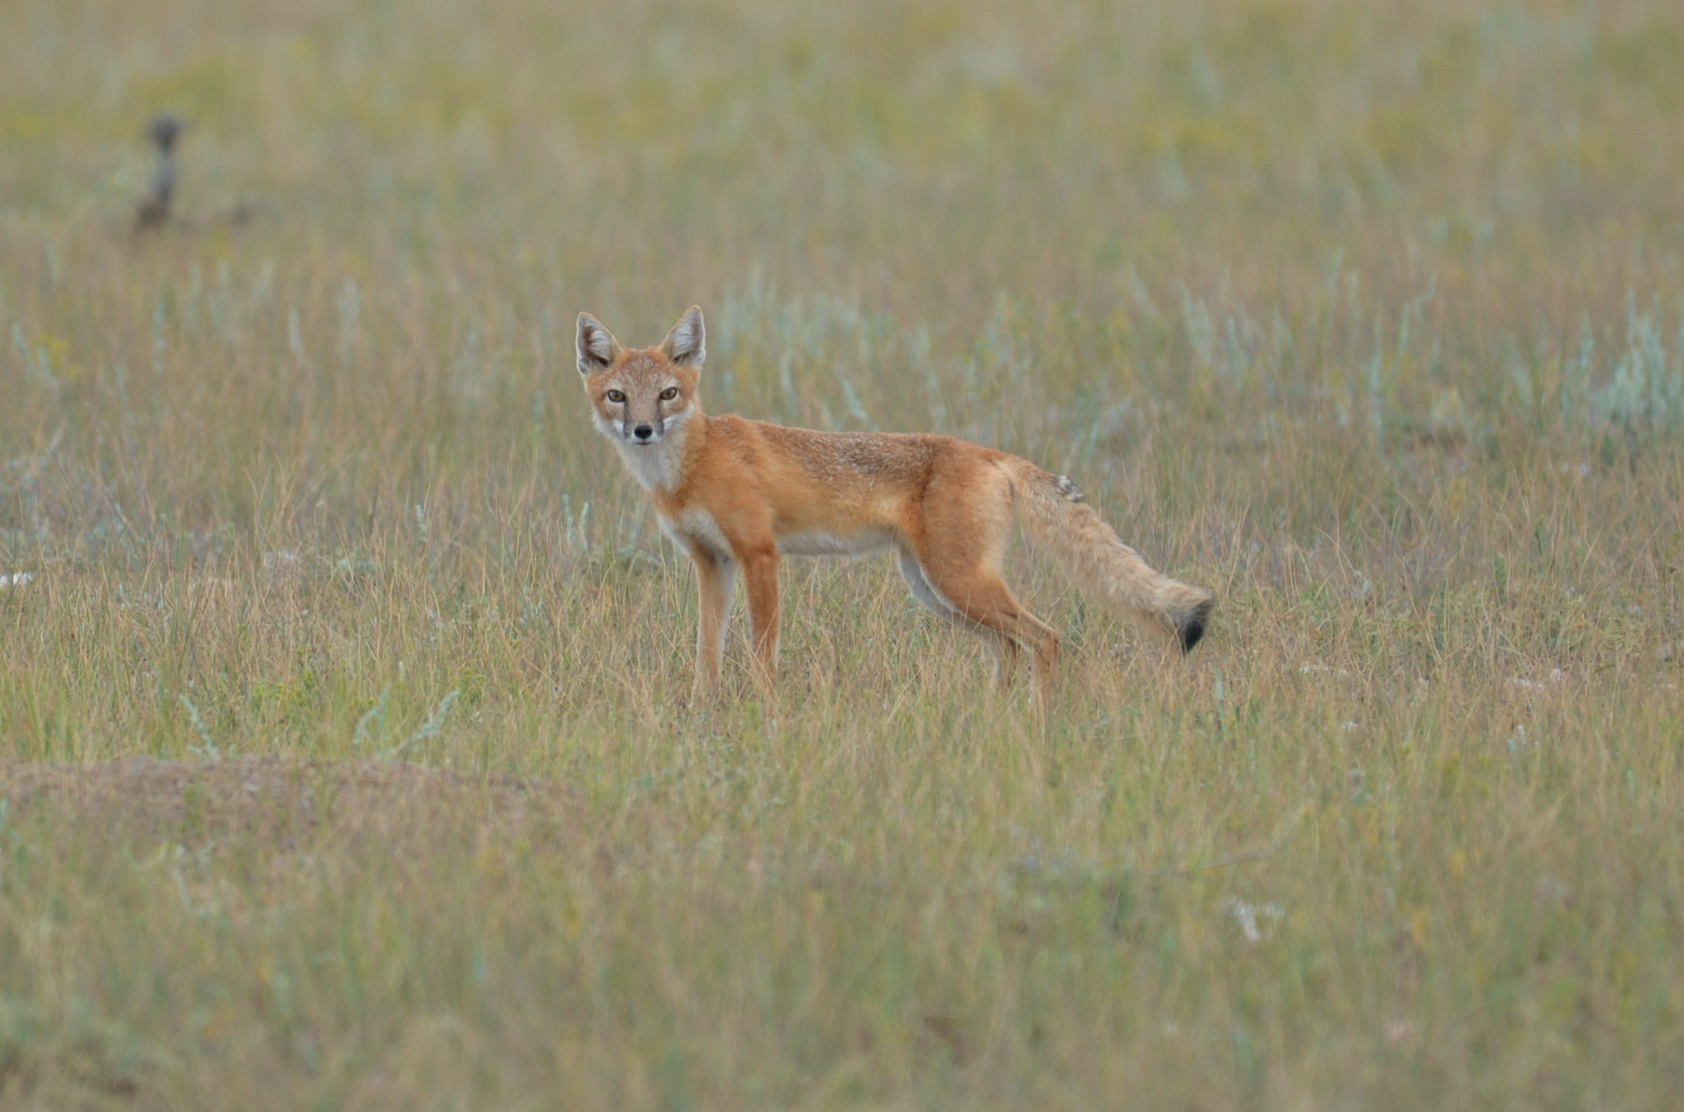 Swift Fox standing in field